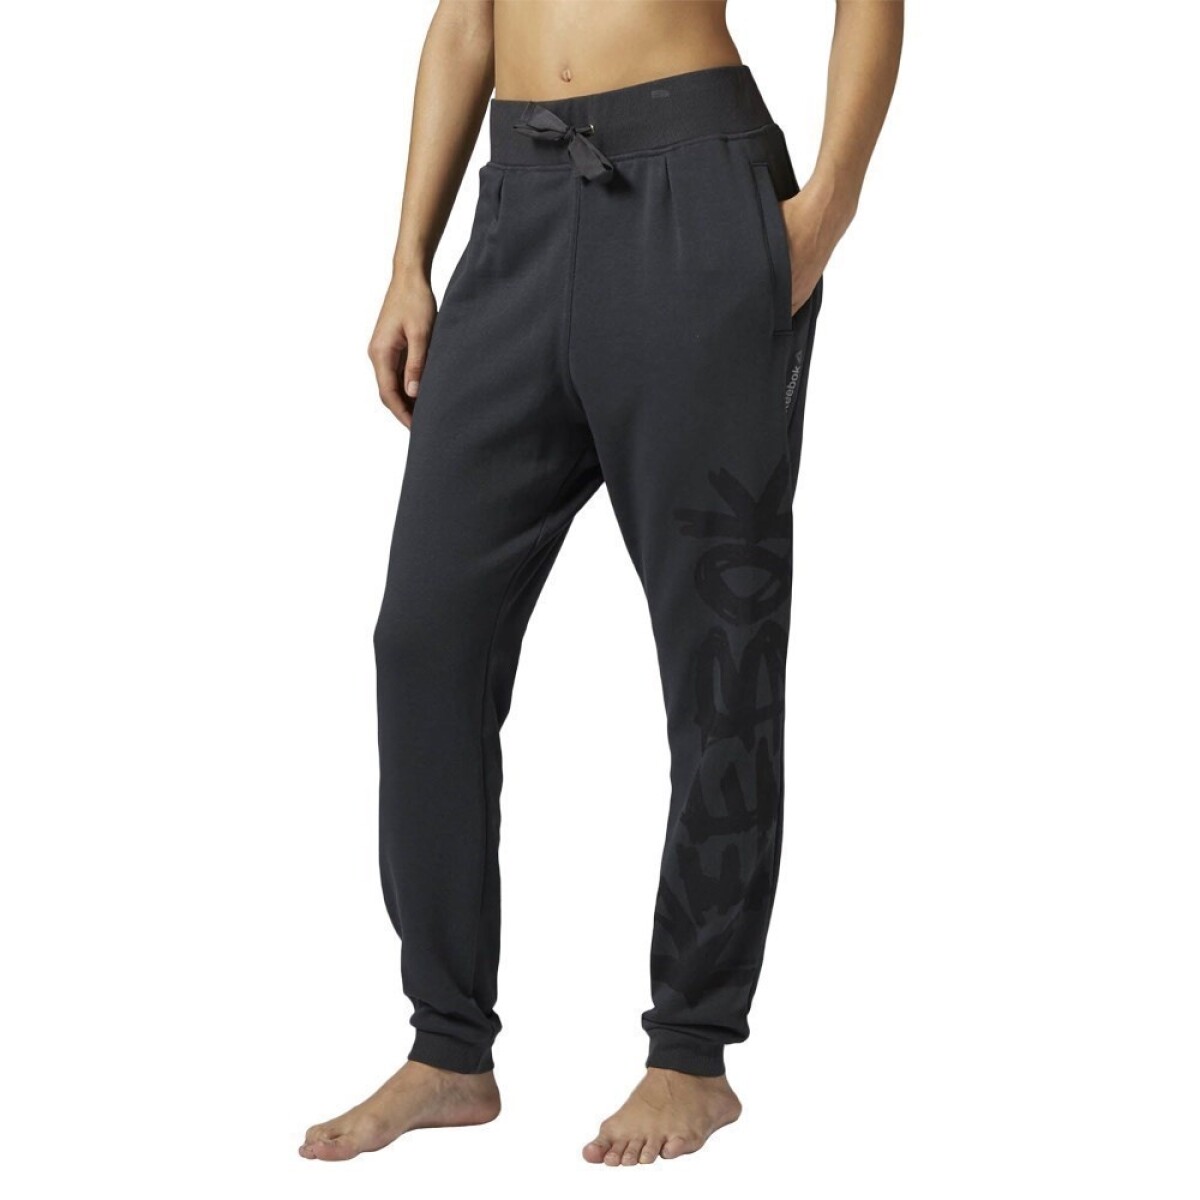 Pantalón Deportivo para Mujer Reebok Dance Knit Drop Crotch - Gris Oscuro 